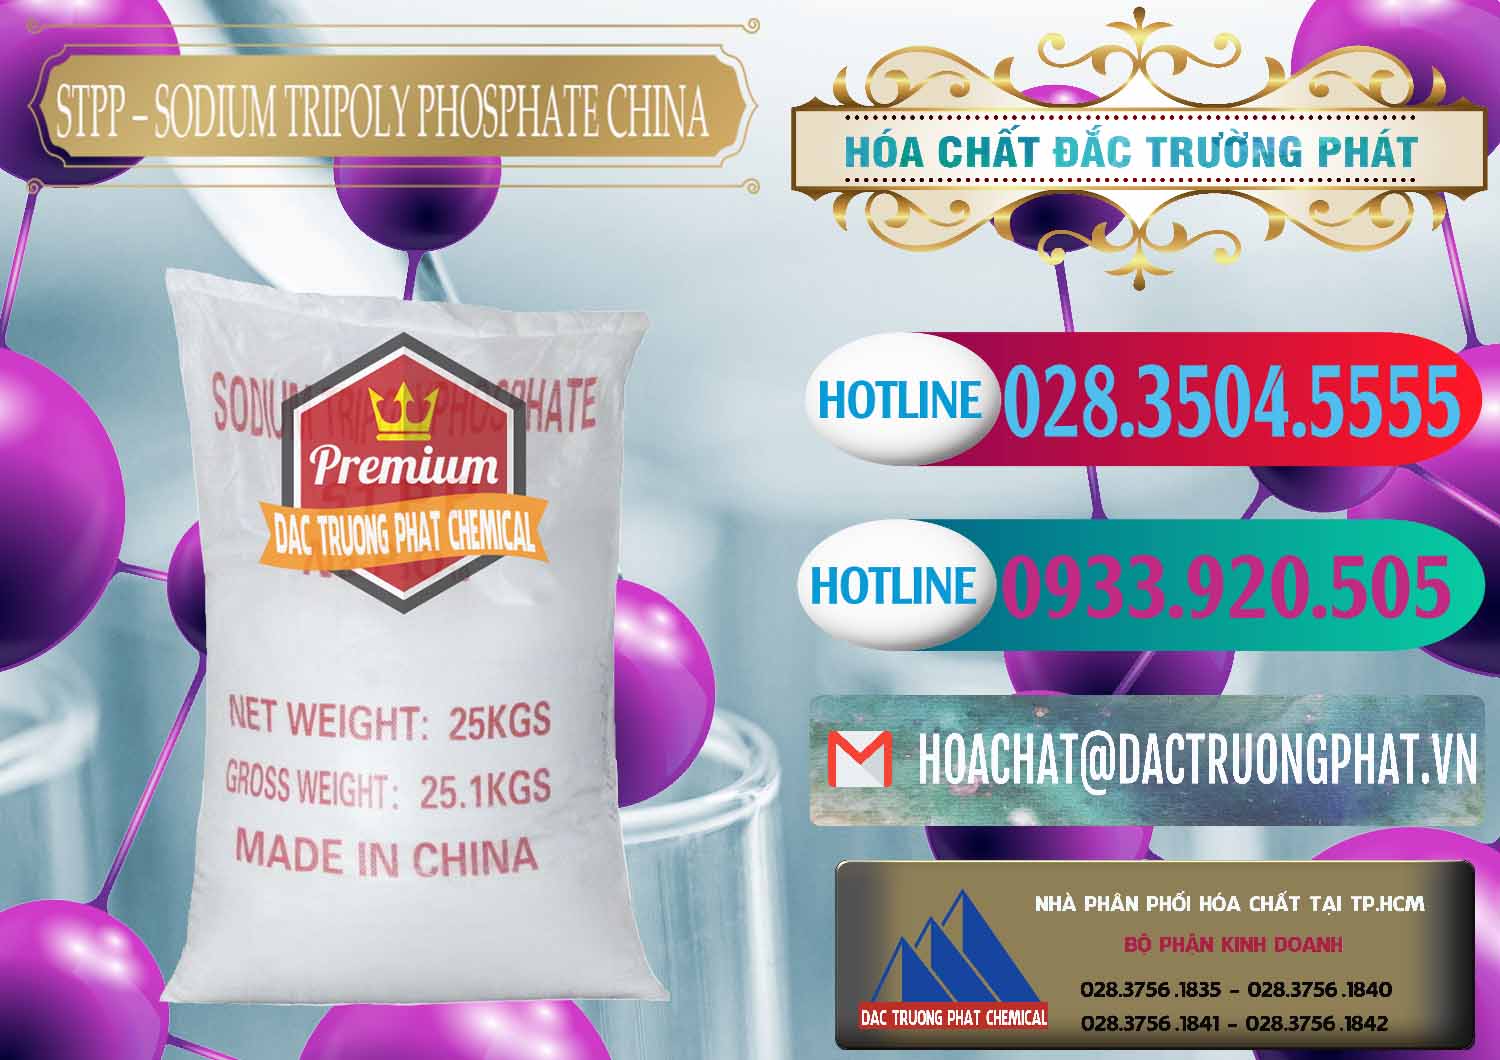 Đơn vị bán ( phân phối ) Sodium Tripoly Phosphate - STPP 96% Chữ Đỏ Trung Quốc China - 0155 - Nơi chuyên cung ứng ( phân phối ) hóa chất tại TP.HCM - truongphat.vn